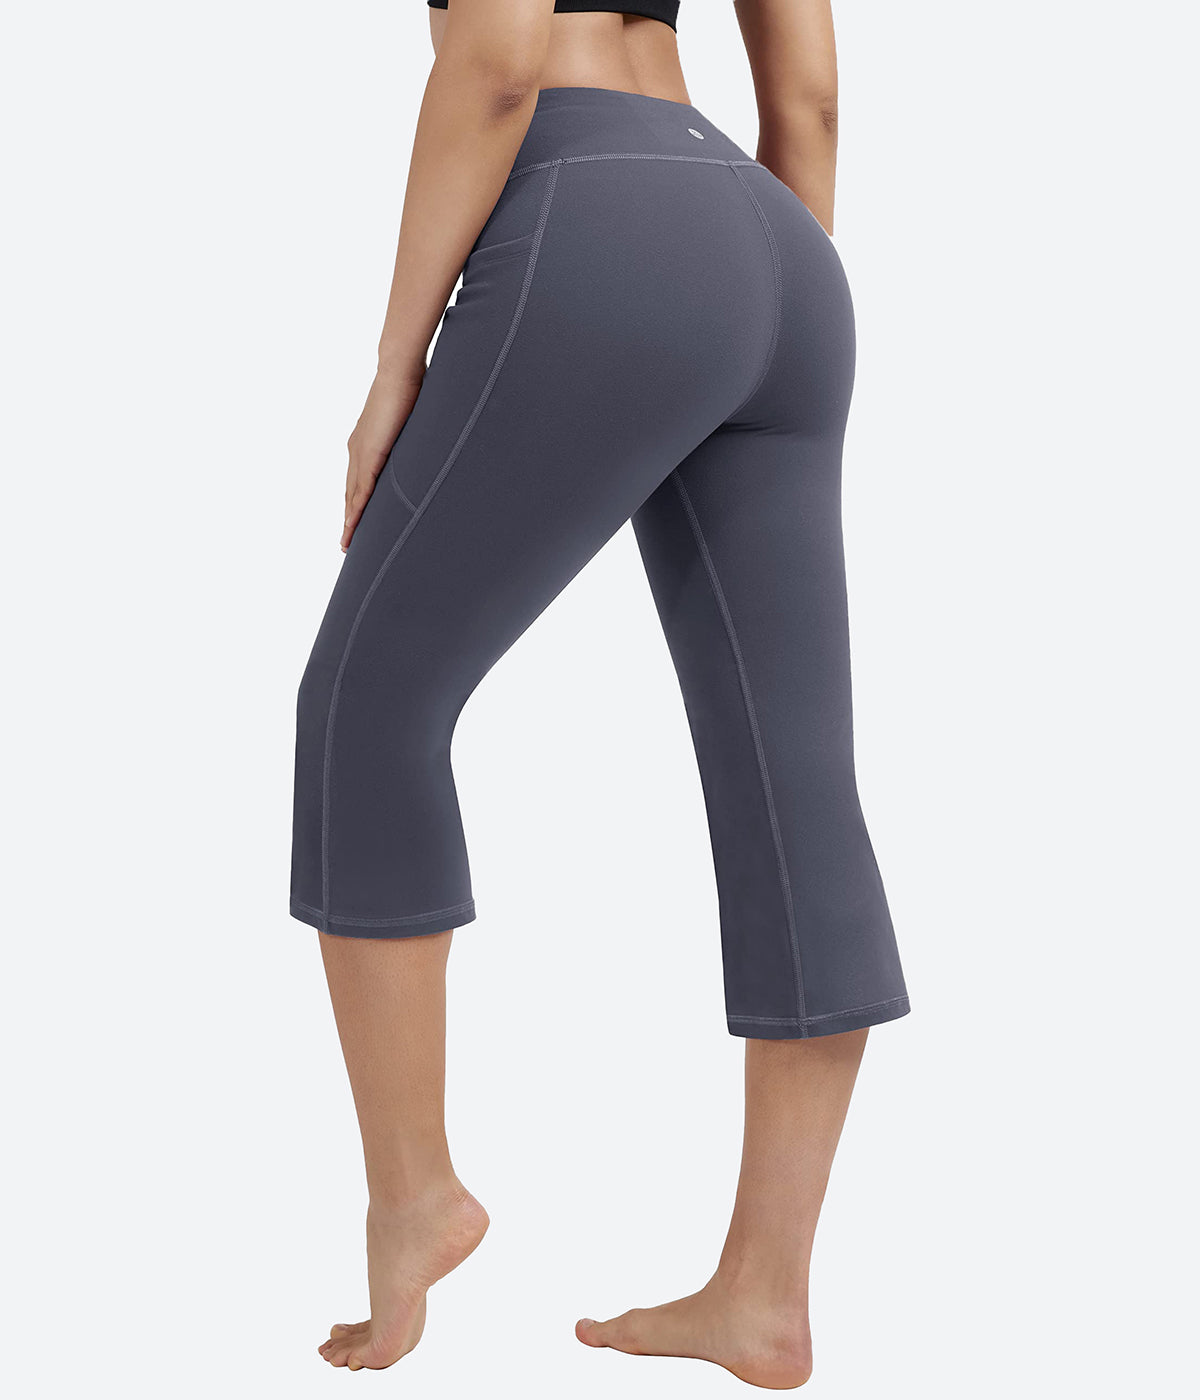 PHISOCKAT, Pants & Jumpsuits, Phisockat Womens Capris Yoga Pants With  Pockets